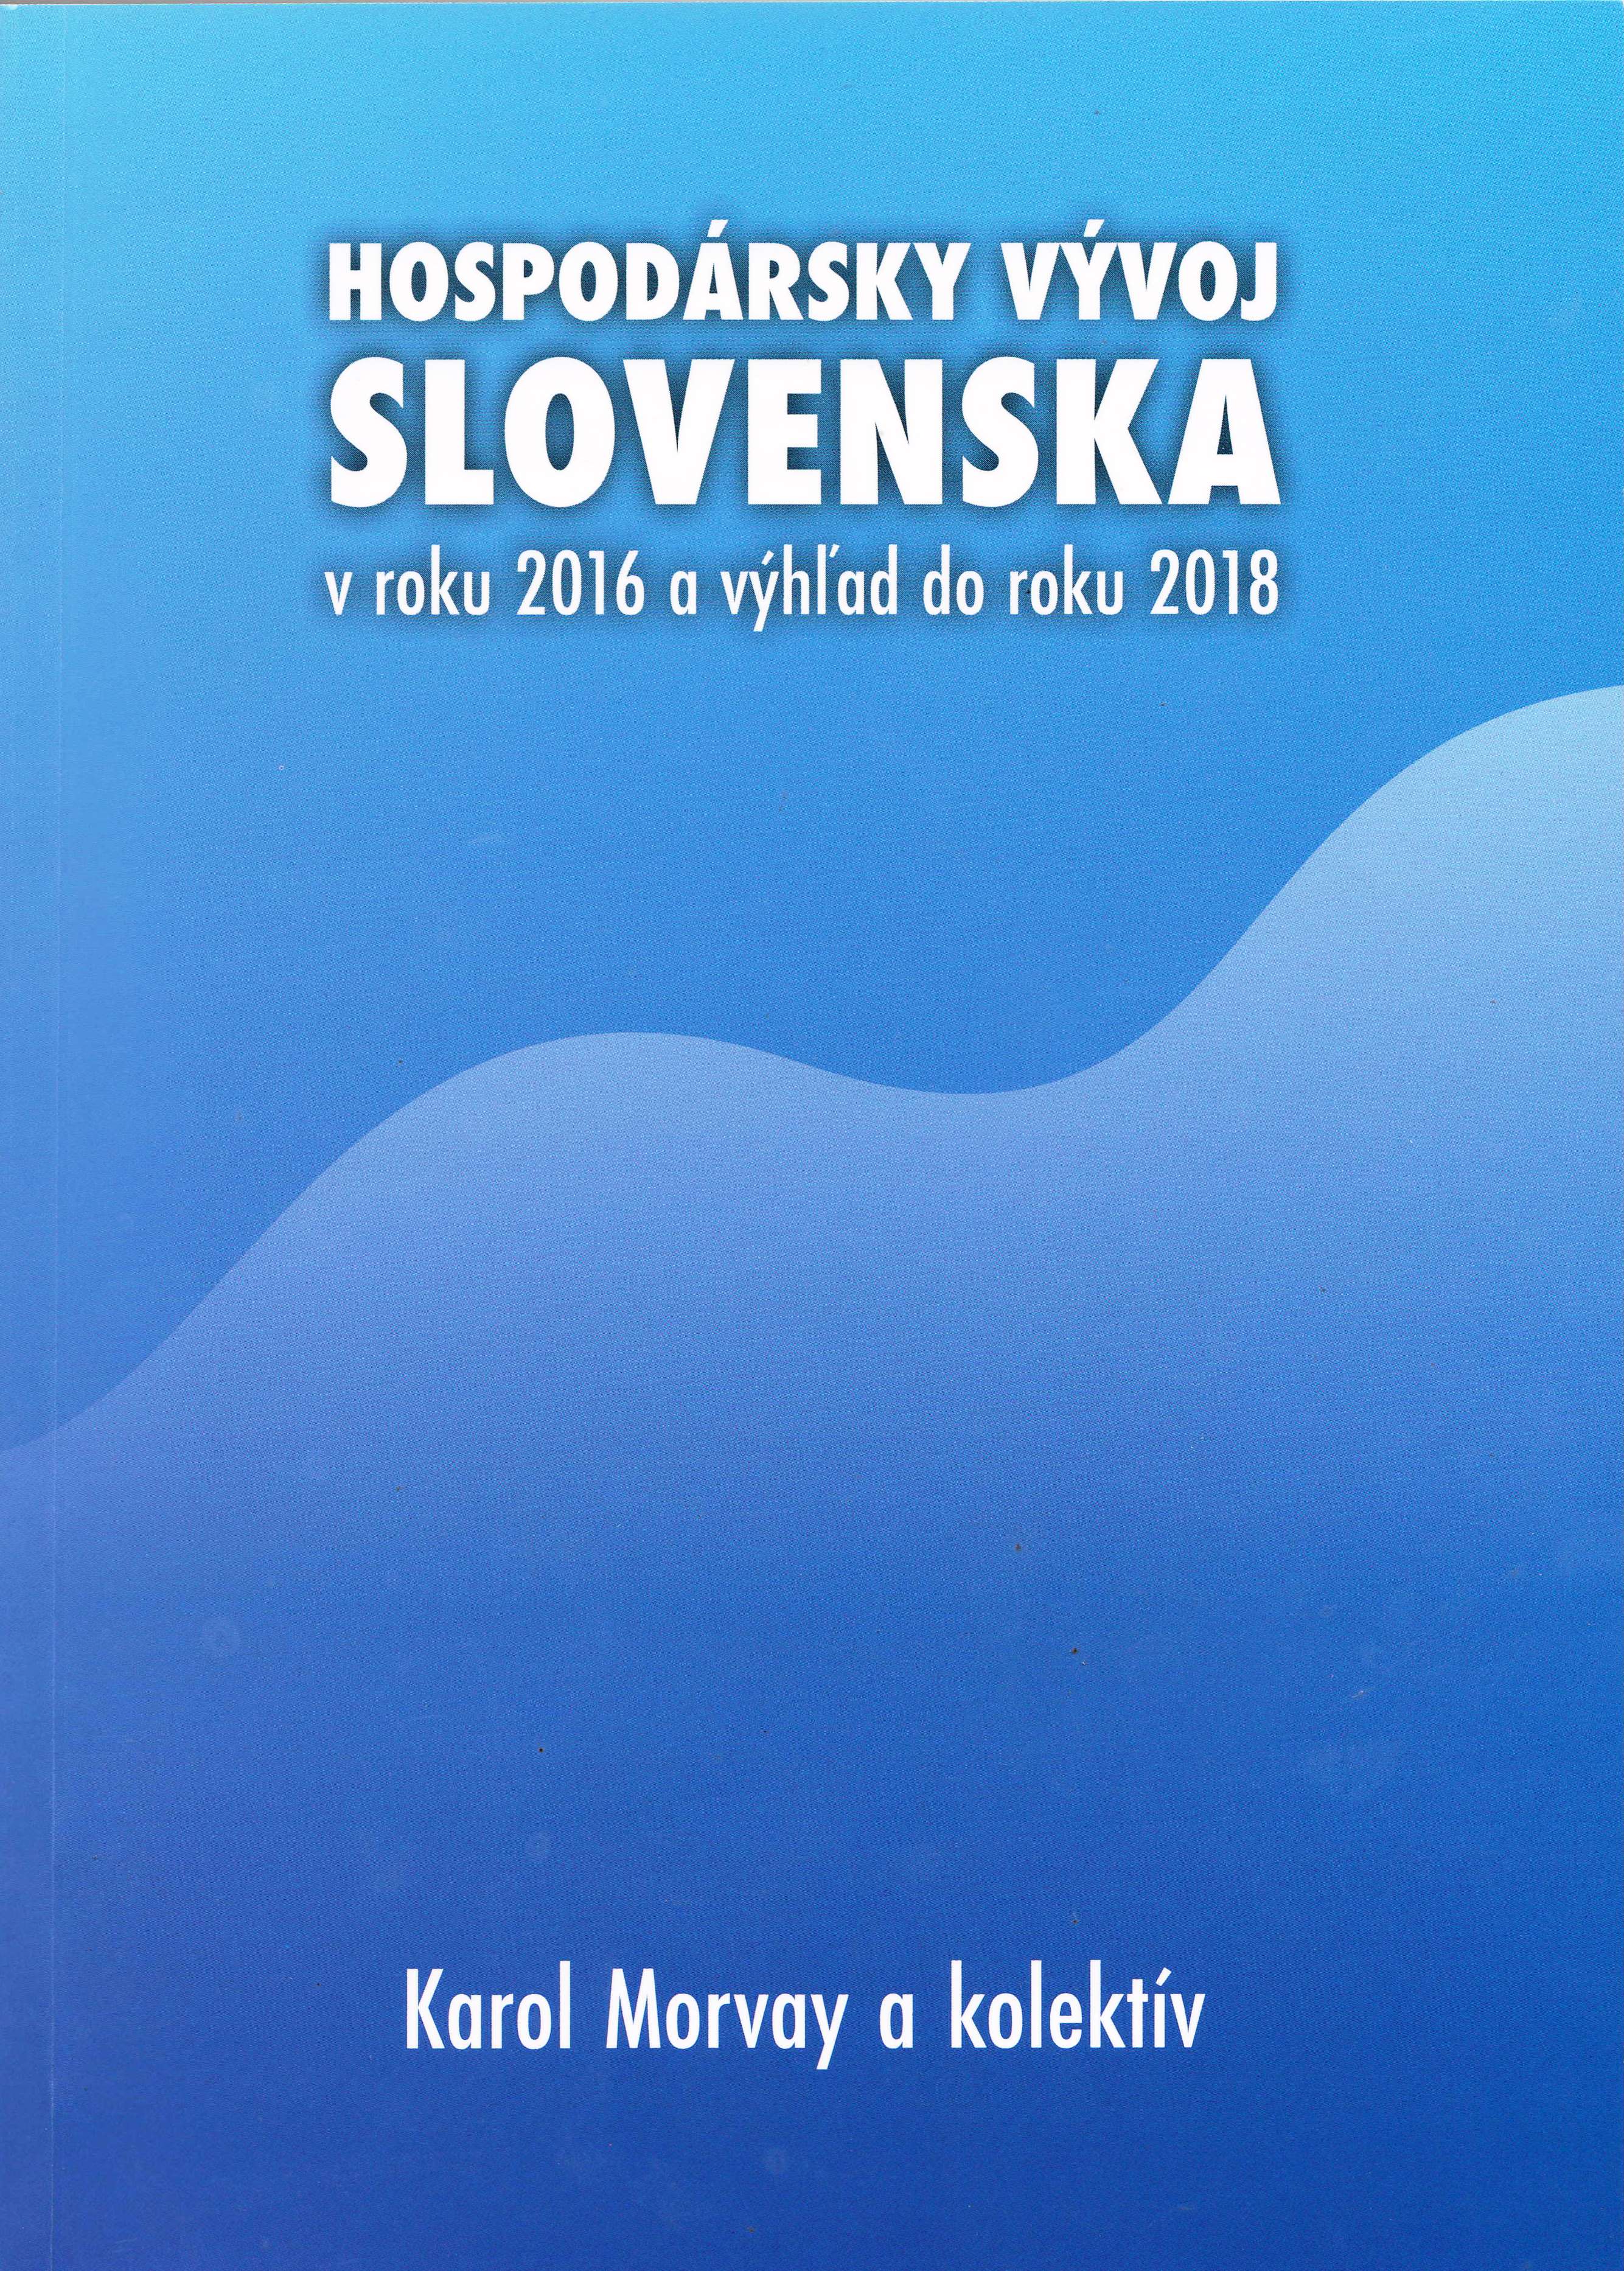 Publikácia Hospodársky vývoj Slovenska v roku 2016 a výhľad do roku 2018